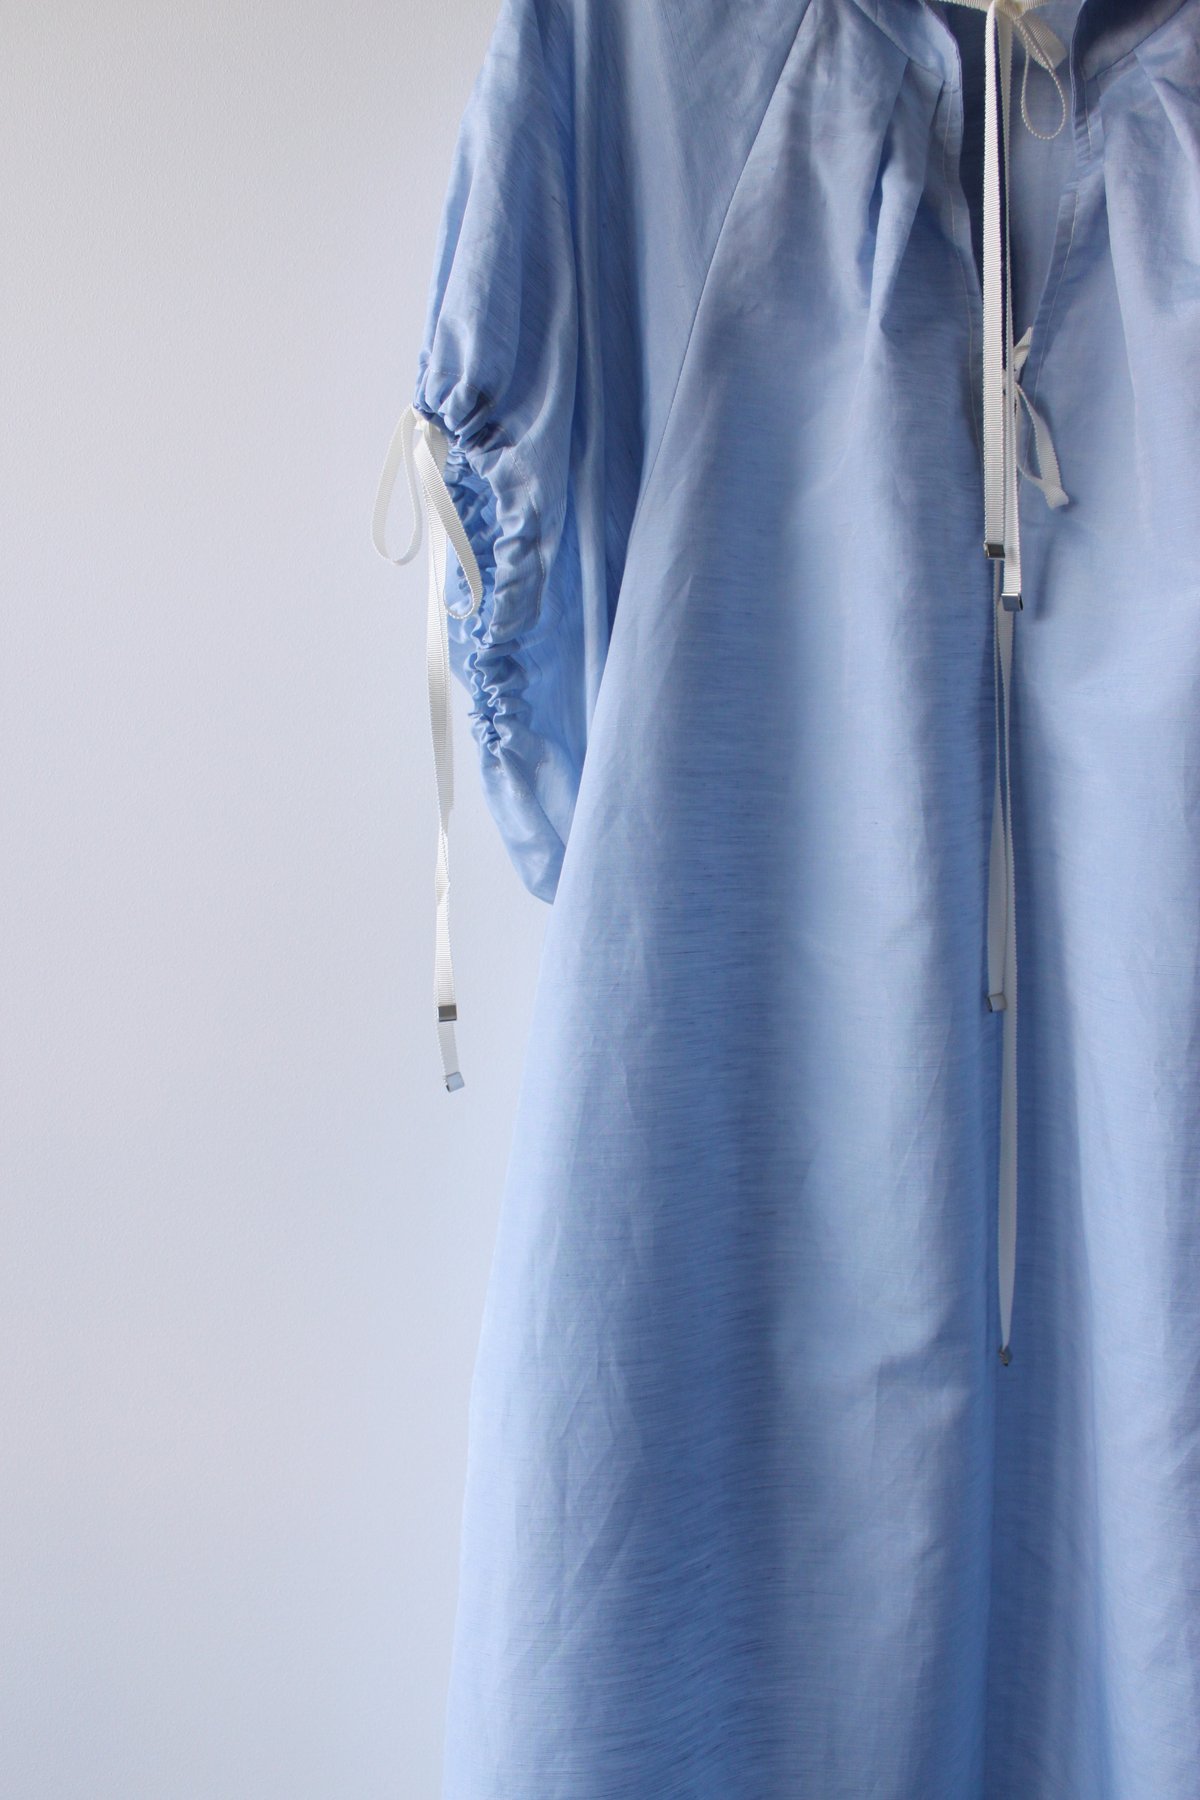 MADE TO ORDER - Silk linen A line puff sleeve dress